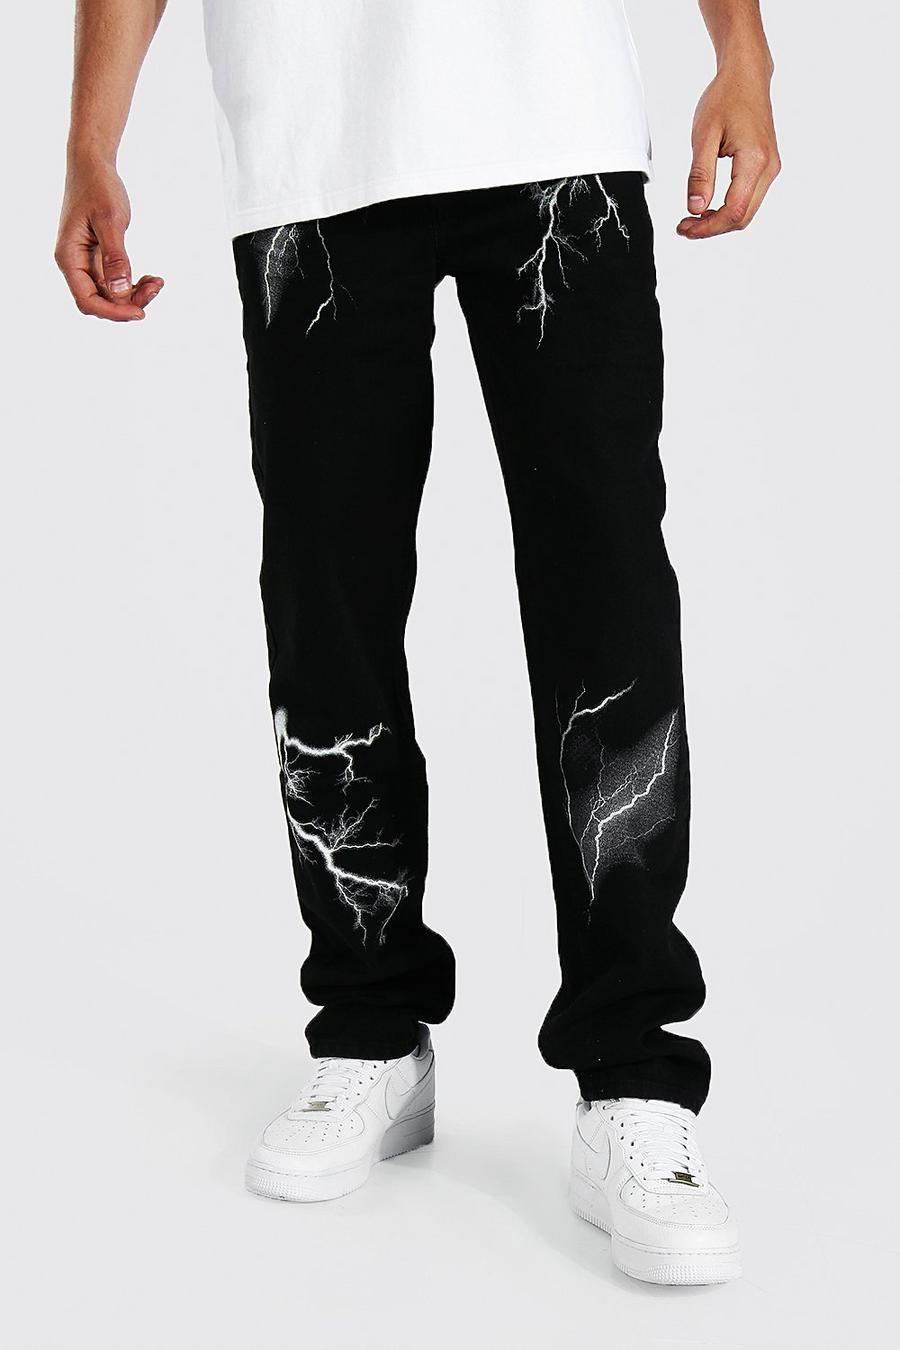 Tall lockere Jeans mit Blitz-Print, True black